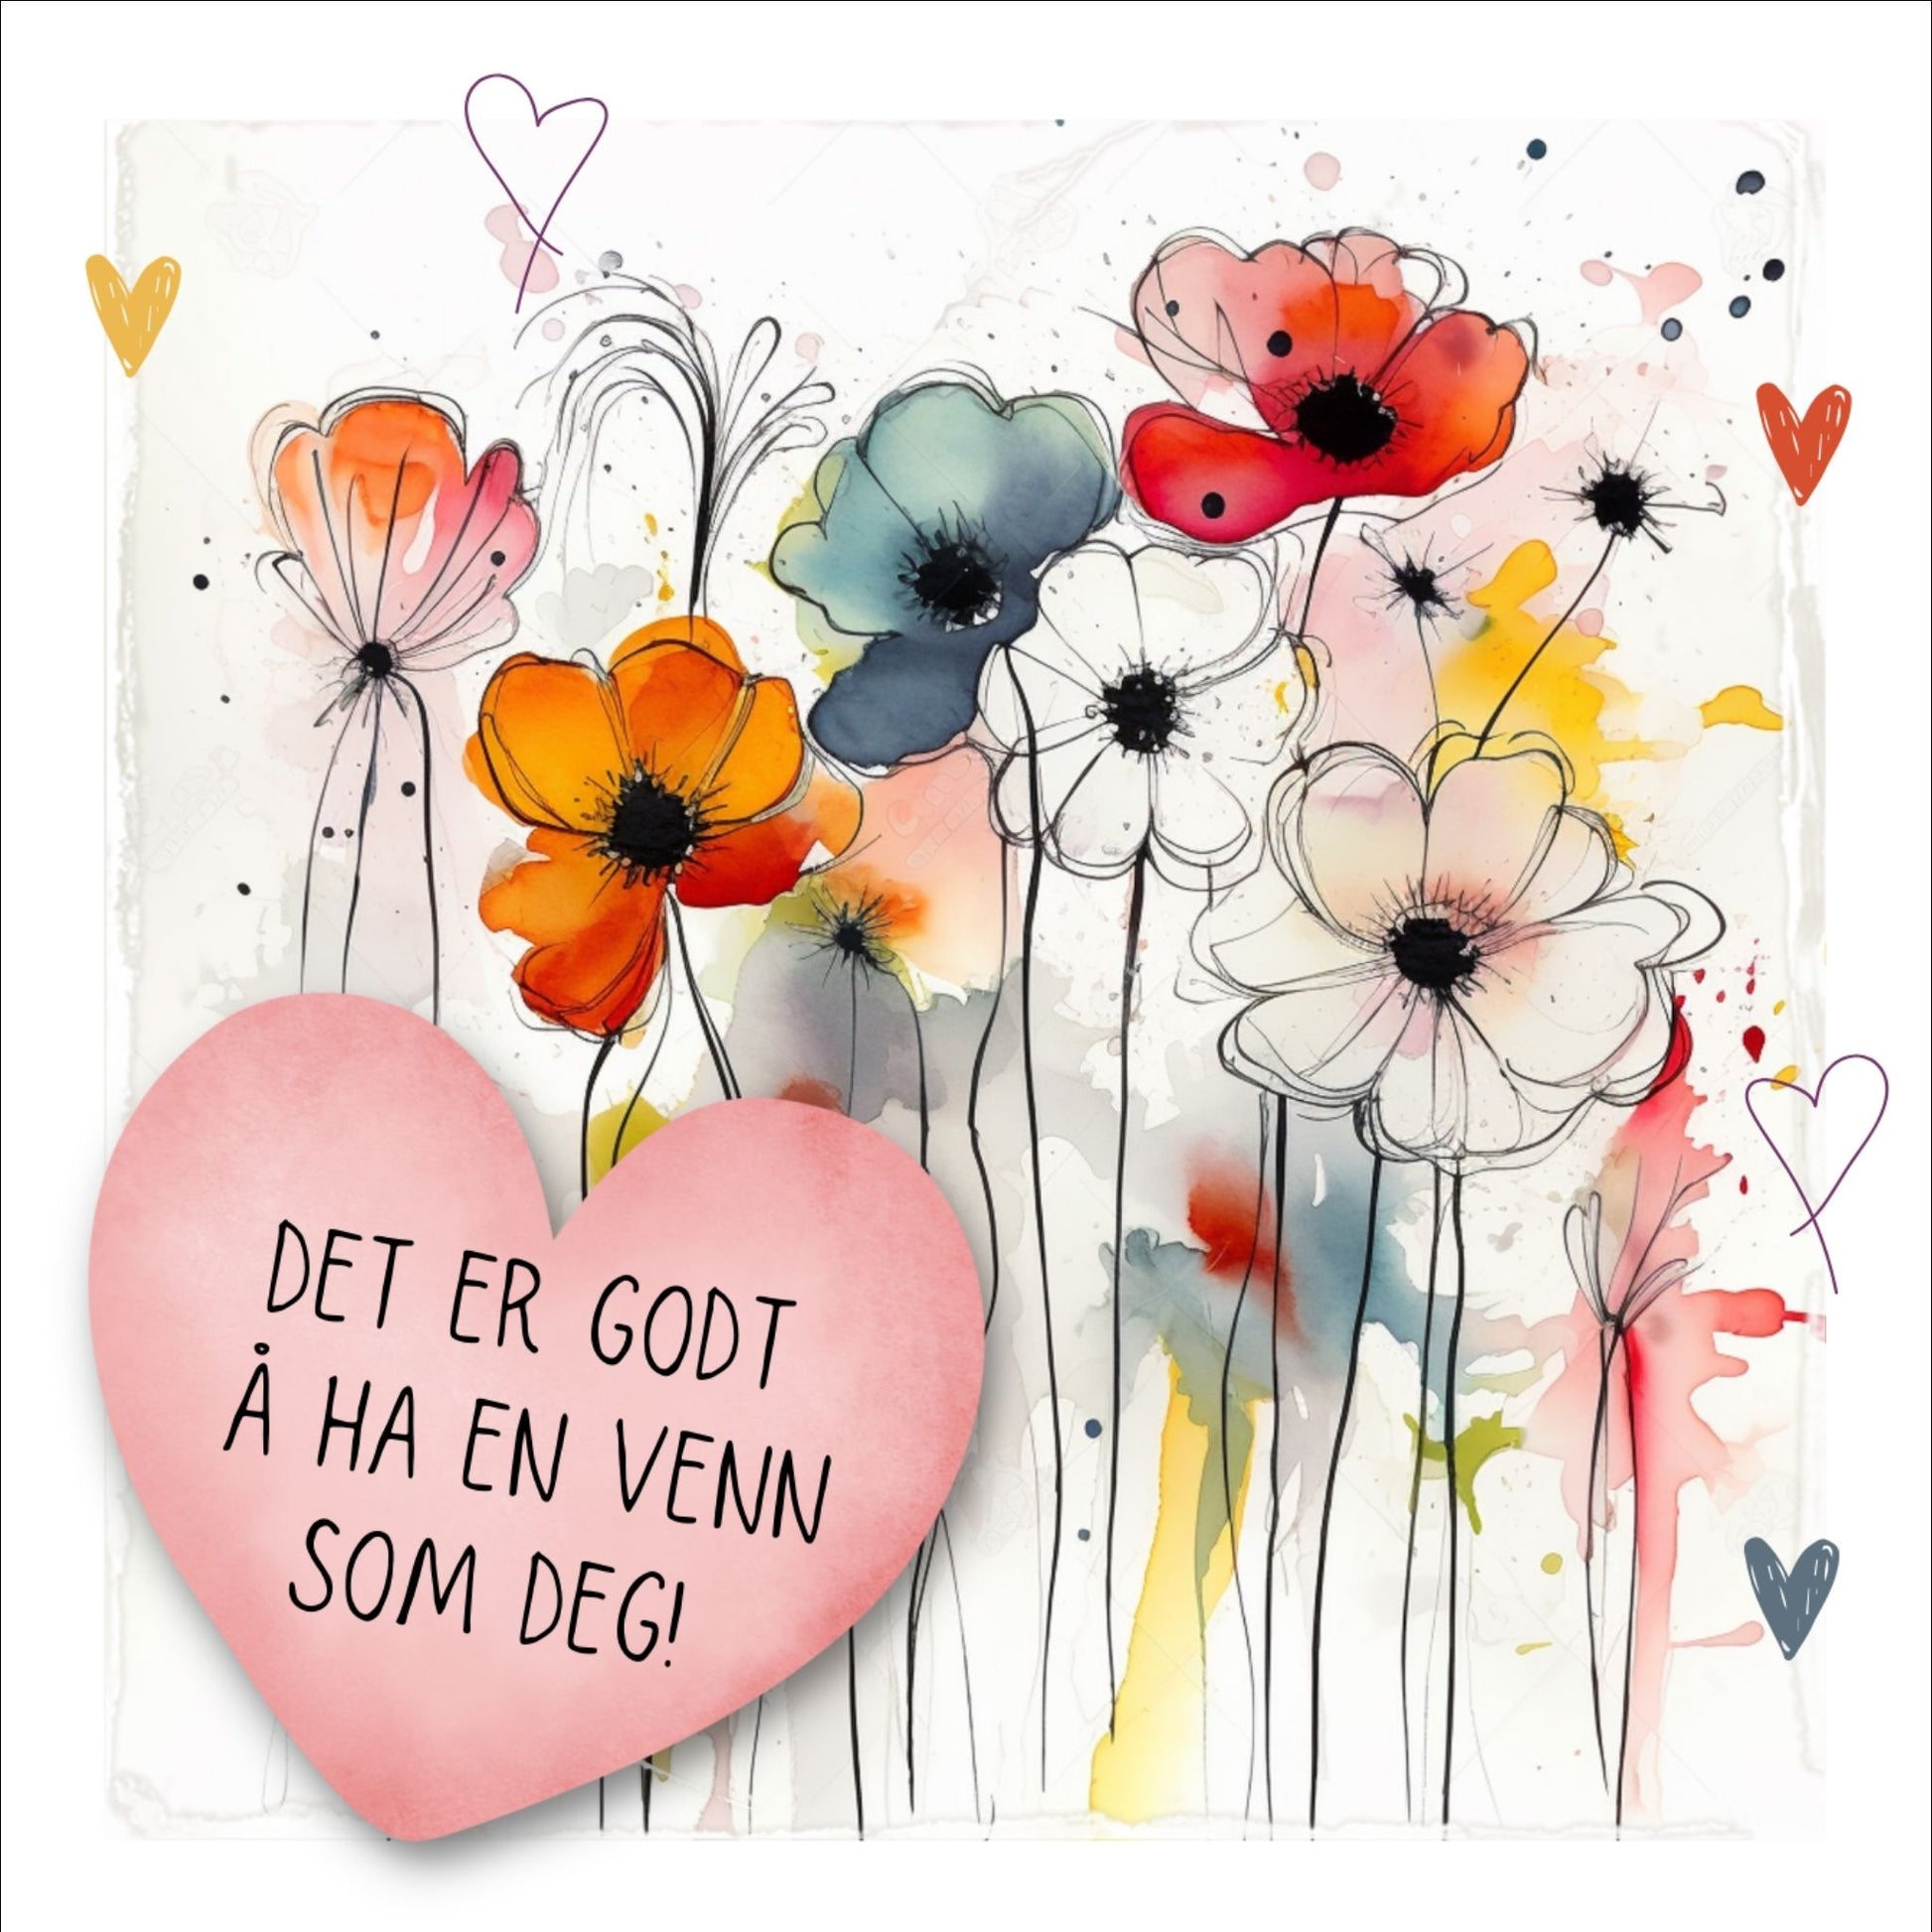 Plakat med rosa hjerte og tekst "Det er godt å ha en venn som deg" - og et motiv med blomster i gul, rød, hvit, blå og oransje. Med hvit kant på 1,5 cm. 